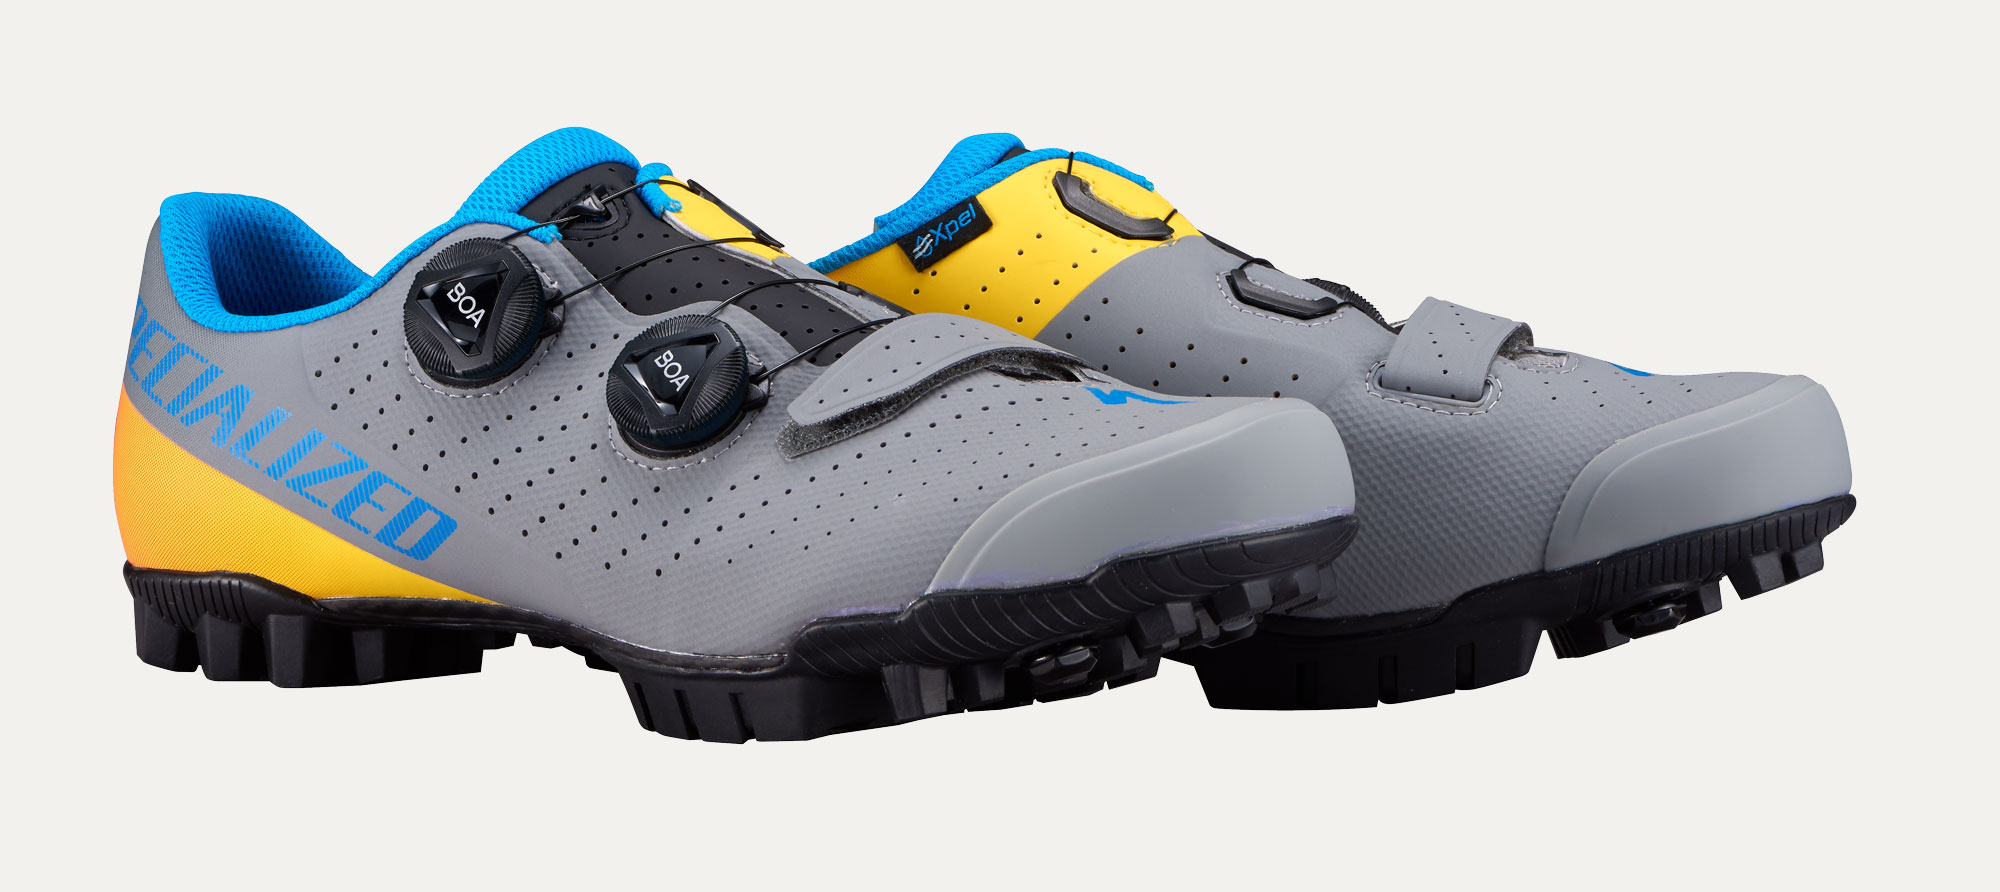 recon 2.0 mountain bike shoes